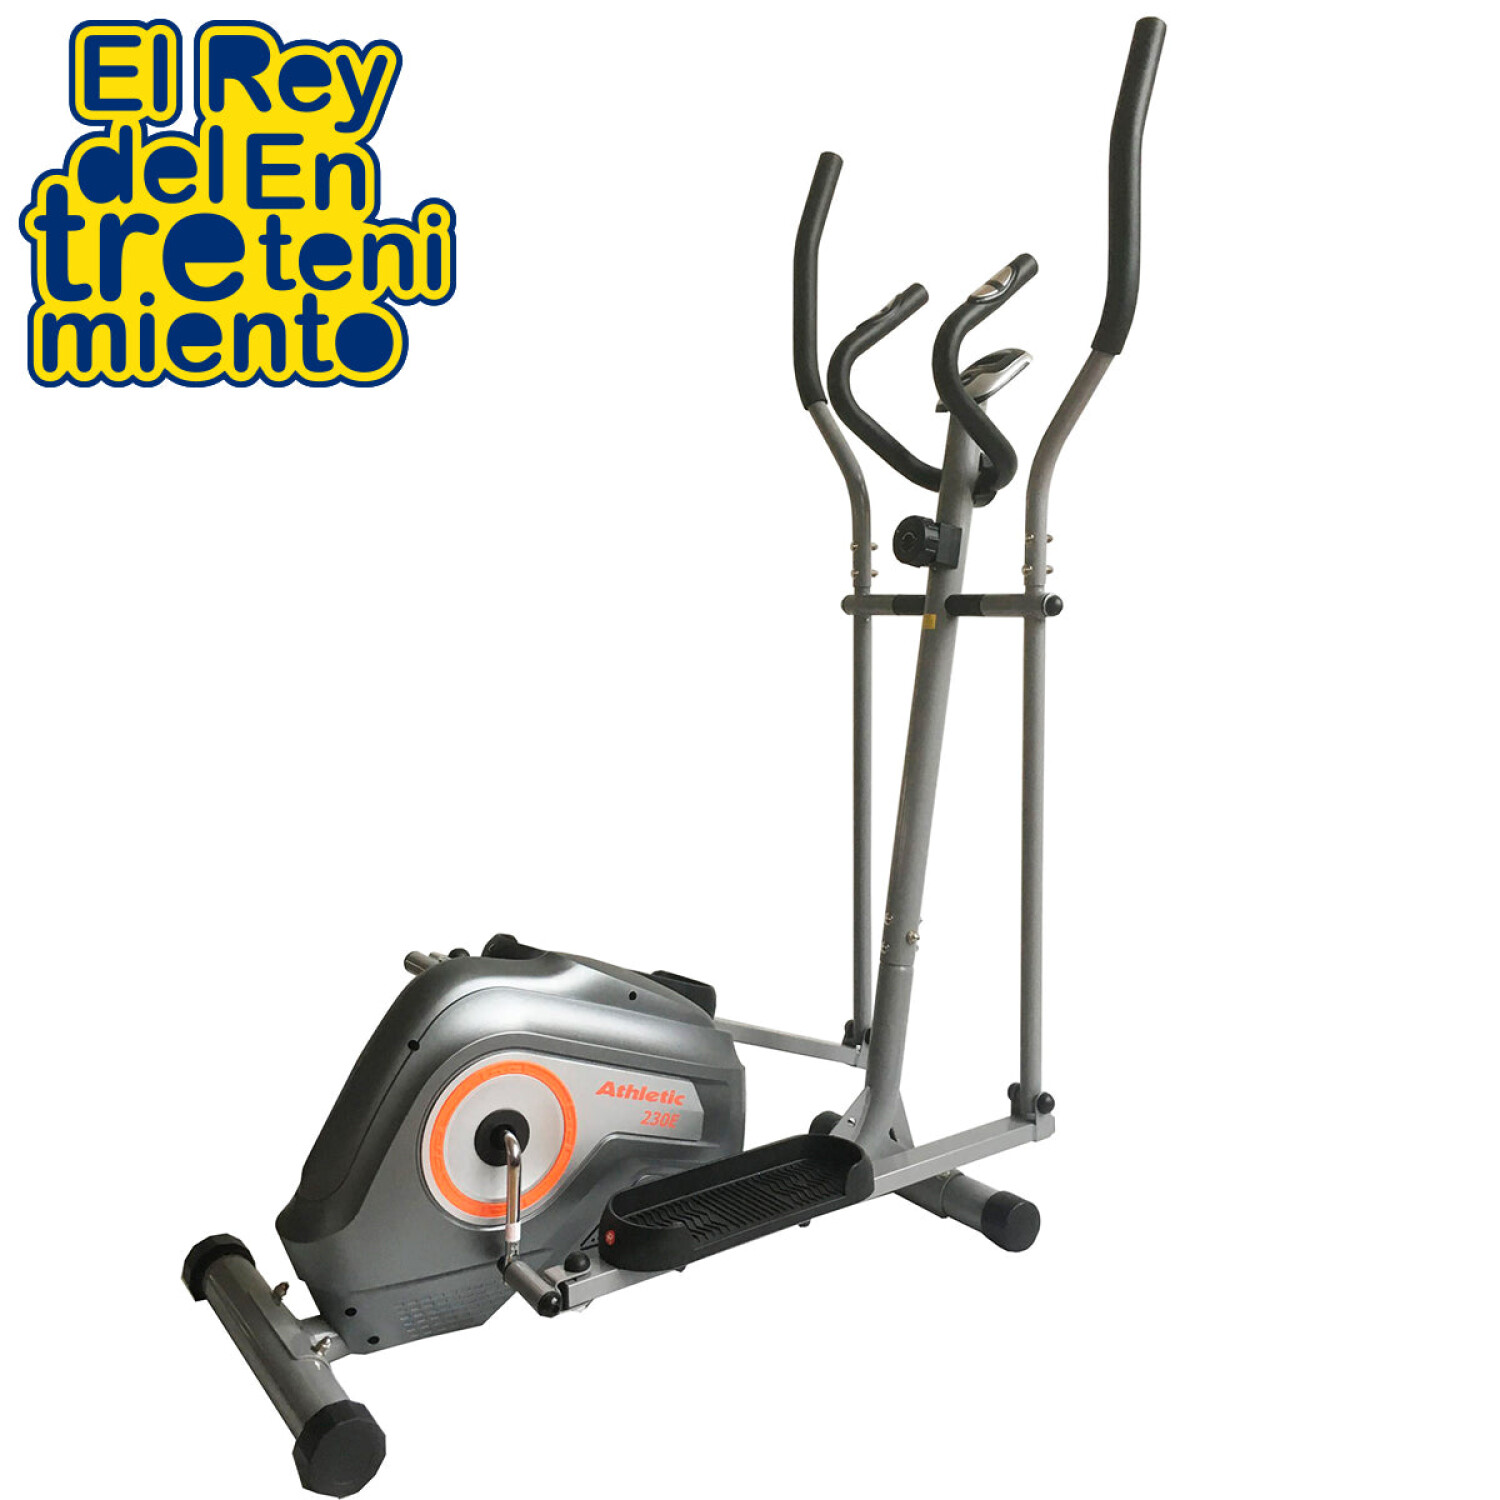 https://f.fcdn.app/imgs/178417/elreydelentretenimiento.com/erdeuy/ea57/original/catalogo/6869361197195_gris_2/1500-1500/bicicleta-eliptica-athletic-290e-magnetica-c-monitor-gris.jpg